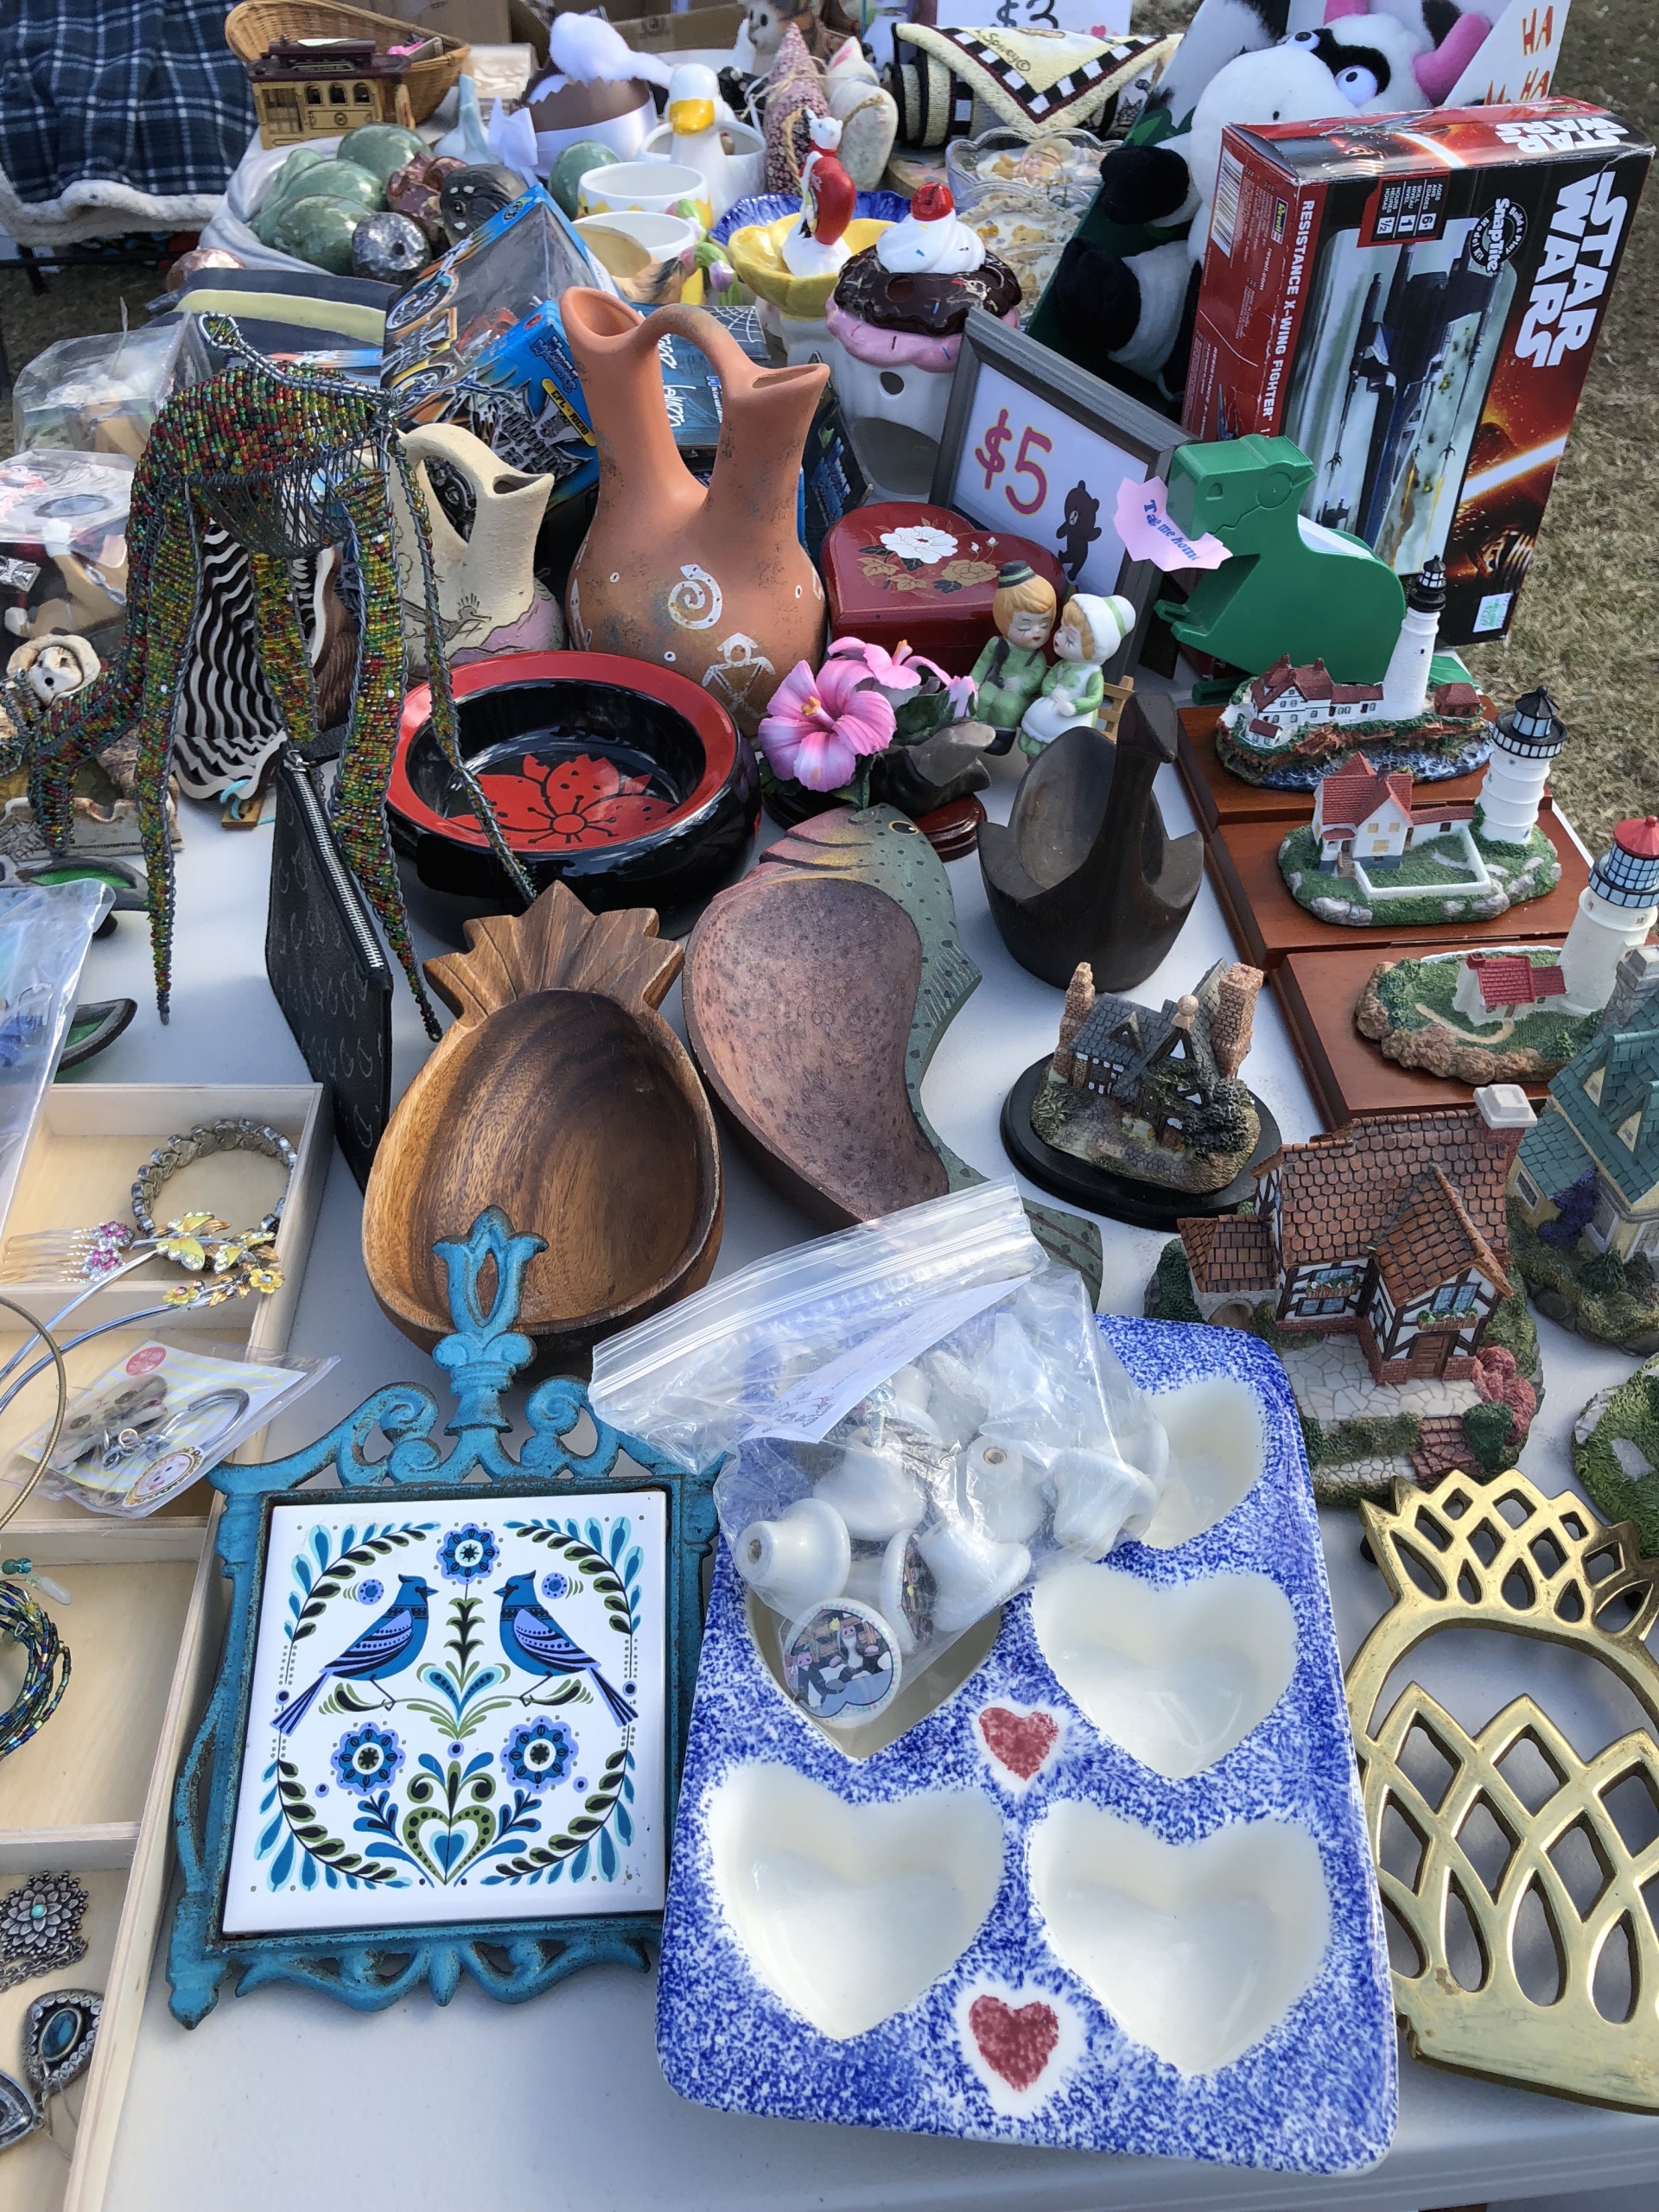 Flea Market - Scranberry Coop - Vintage Store - Antiques, Collectibles, & More